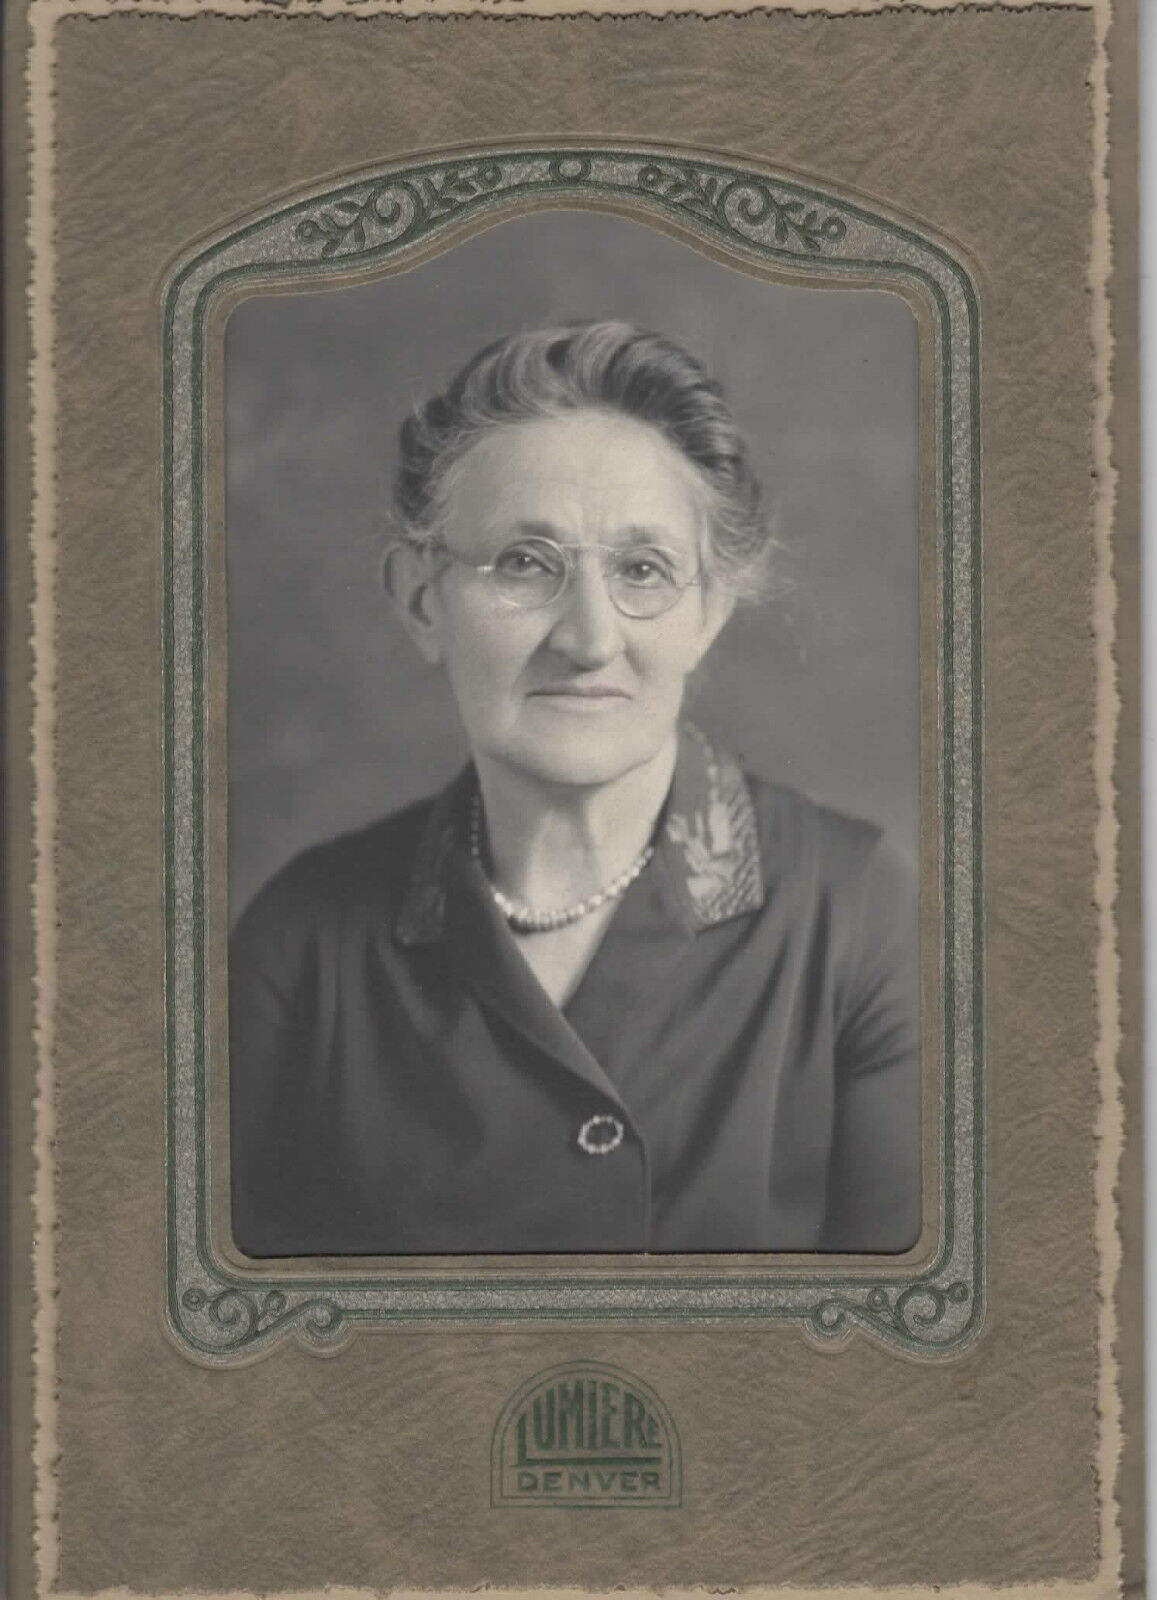 Antique Photo-Denver Colorado-WEIMMAM Family Lady-Glasses-Necklas-Lumiere Photog